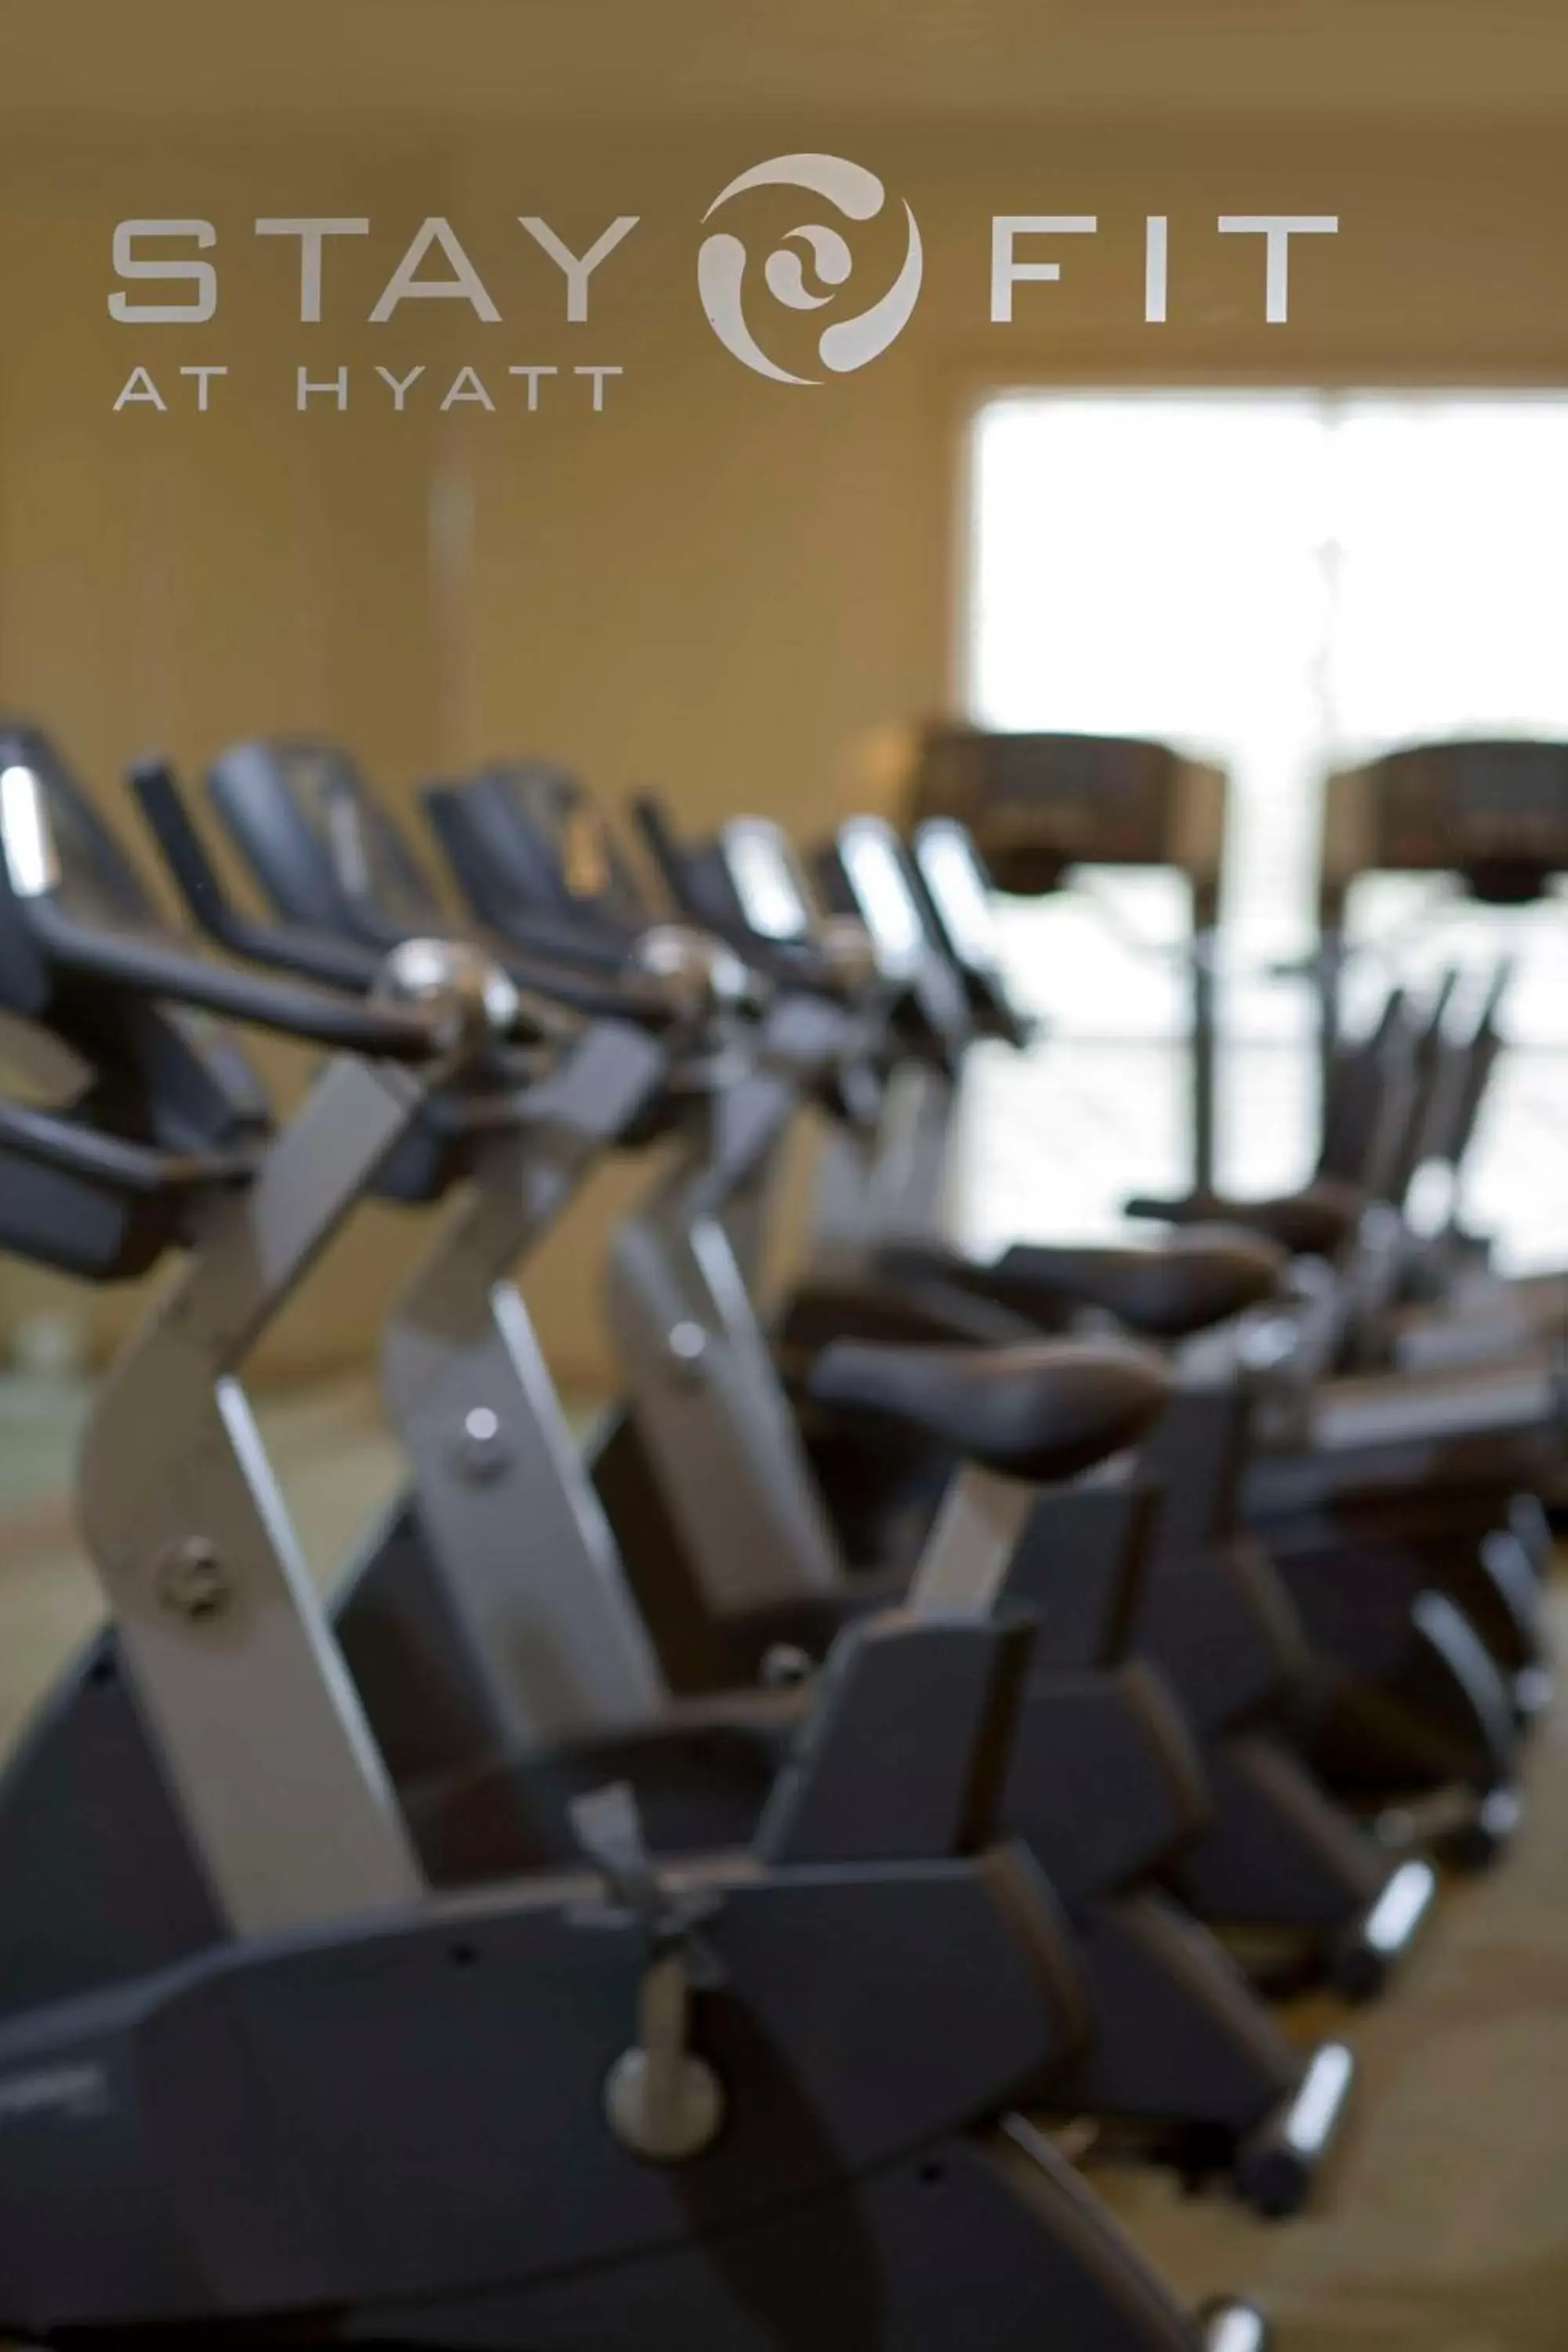 Fitness centre/facilities, Fitness Center/Facilities in Hyatt Regency Savannah